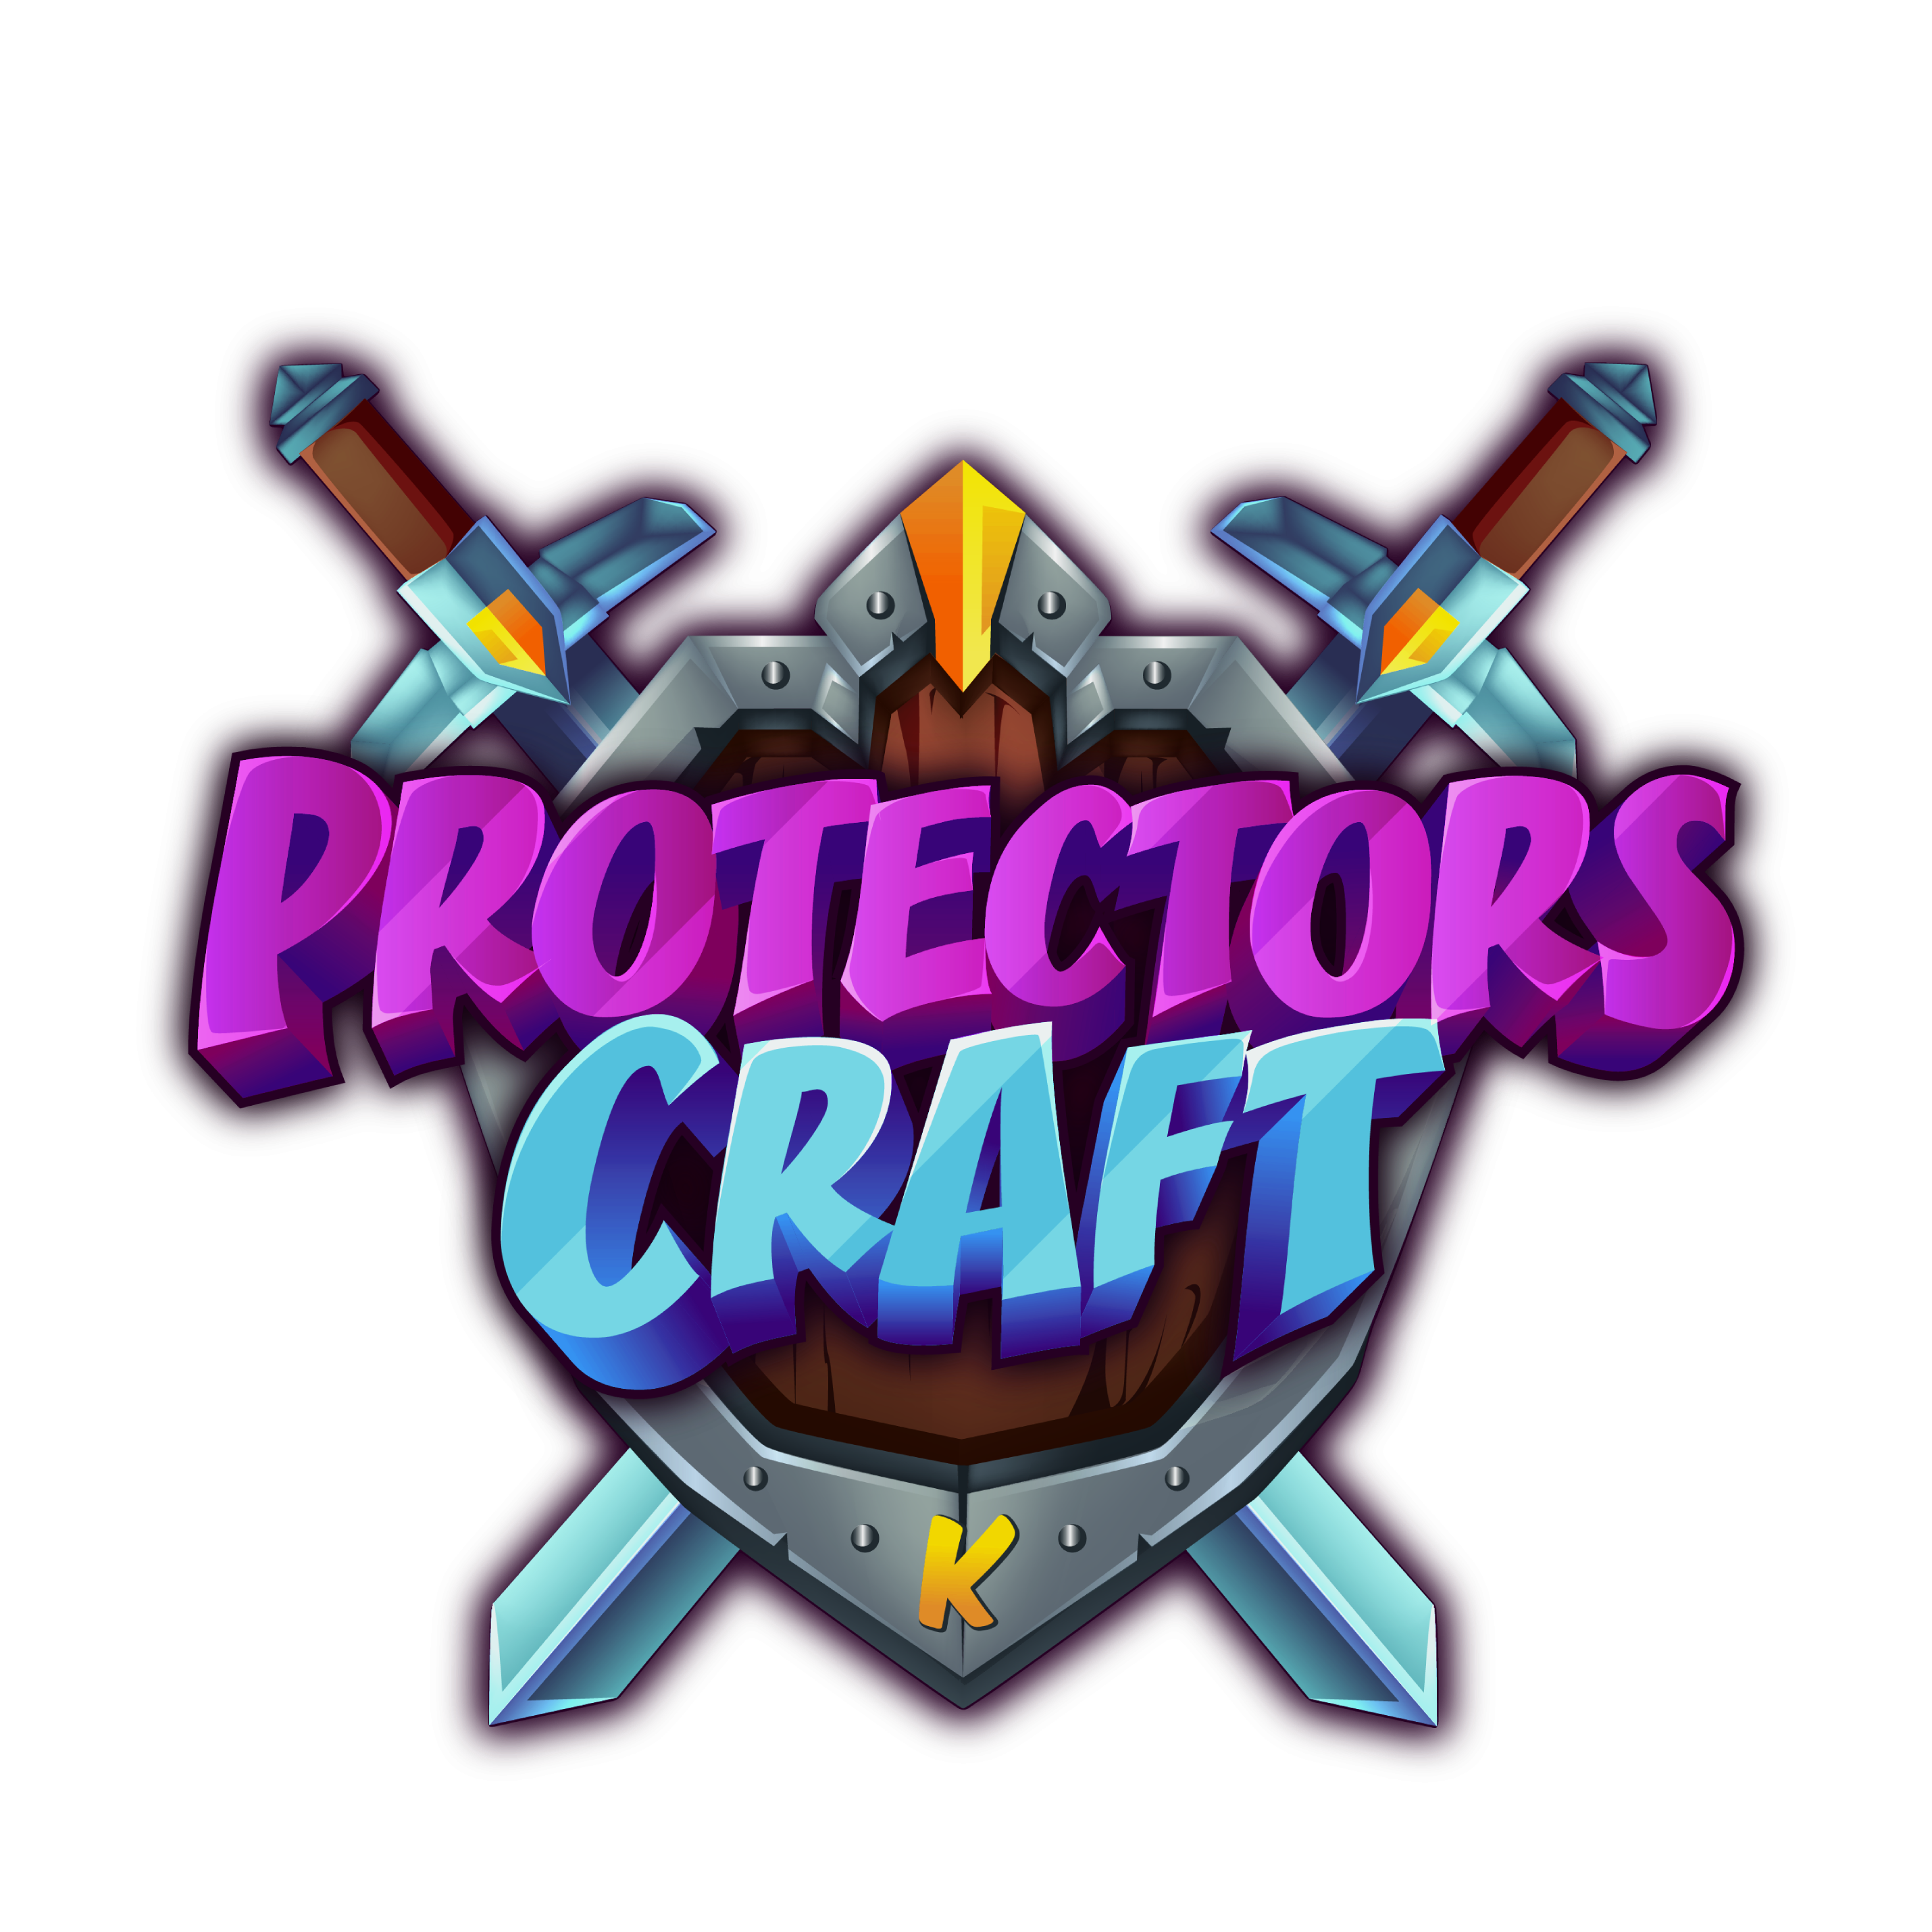 ProtectorsCraft Uptime